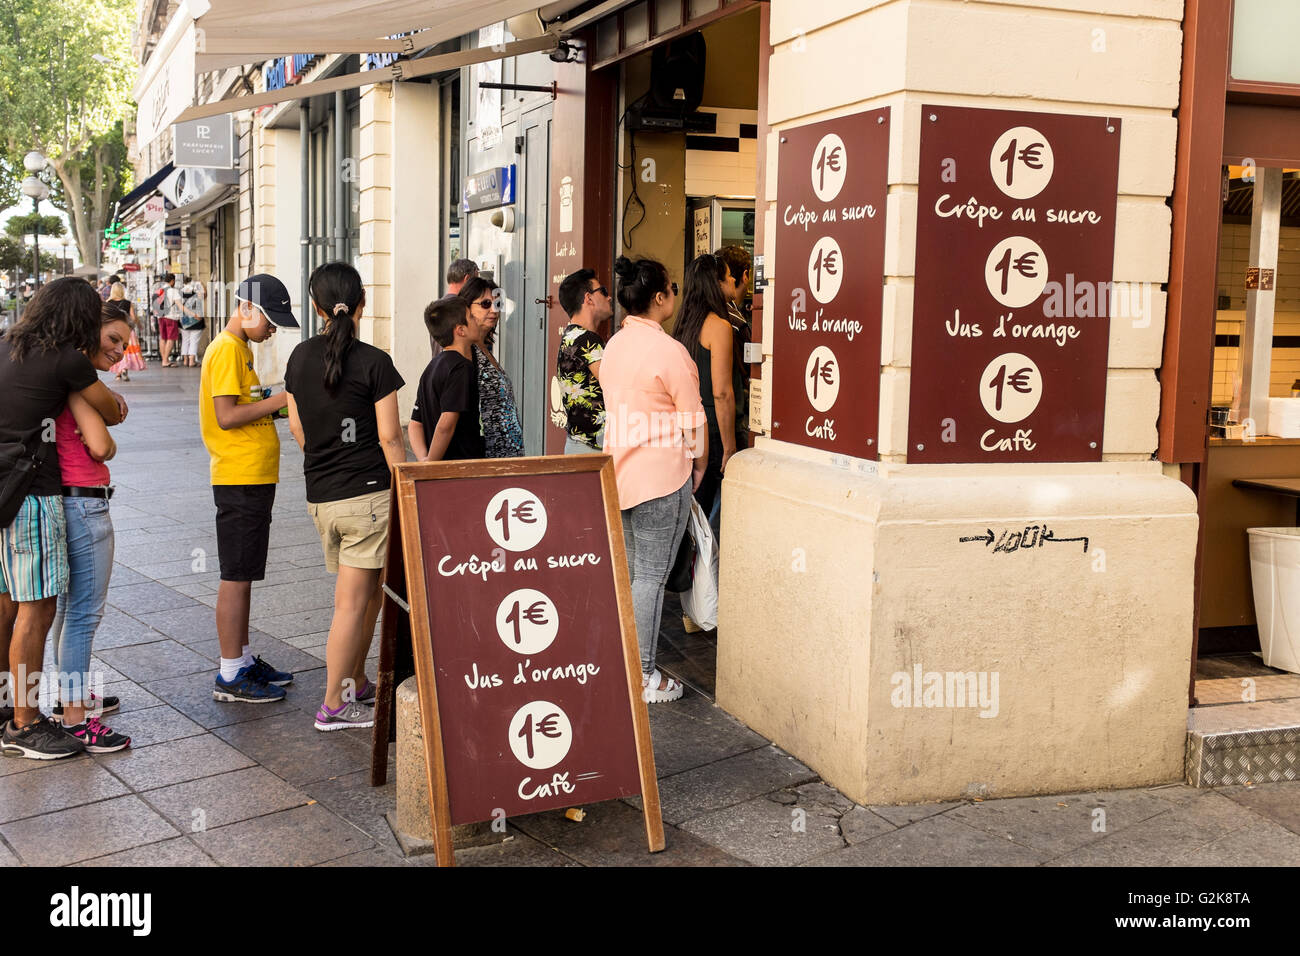 People queuing at 1€ drink shop, Avignon, Vaucluse, Provence-Alpes-Côte d'Azur, France Stock Photo